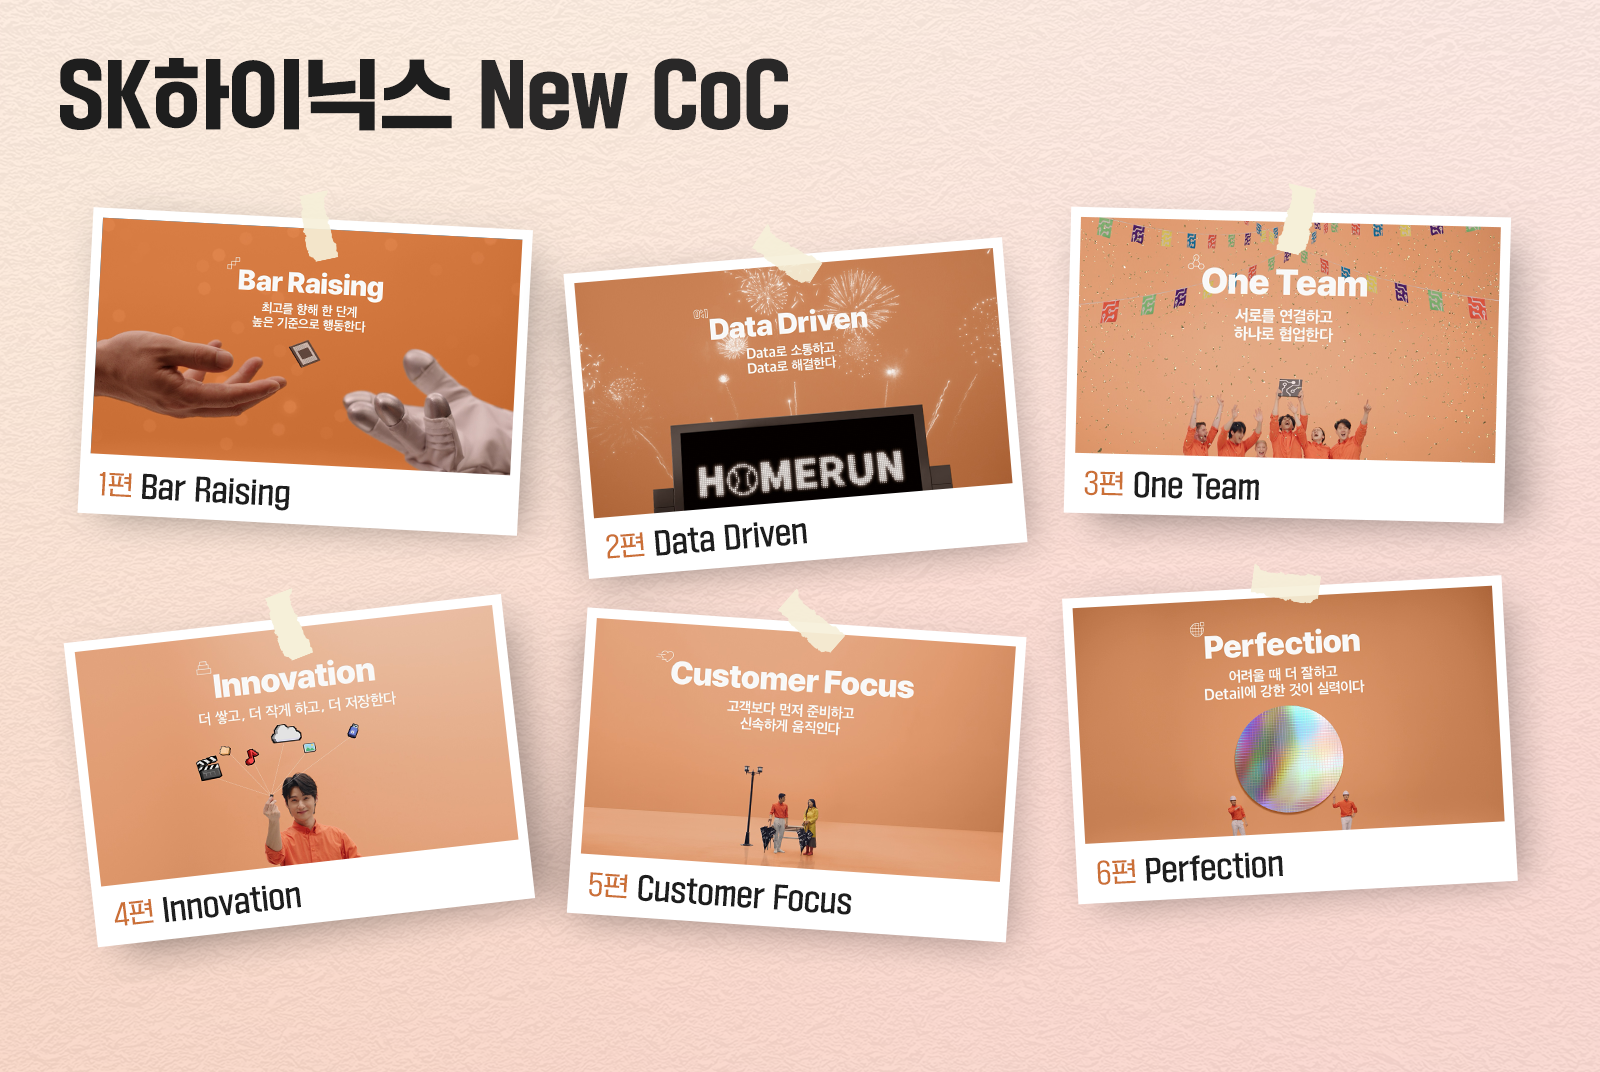 New CoC 여섯 가지 행동 가이드라인을 표현한 숏폼 영상